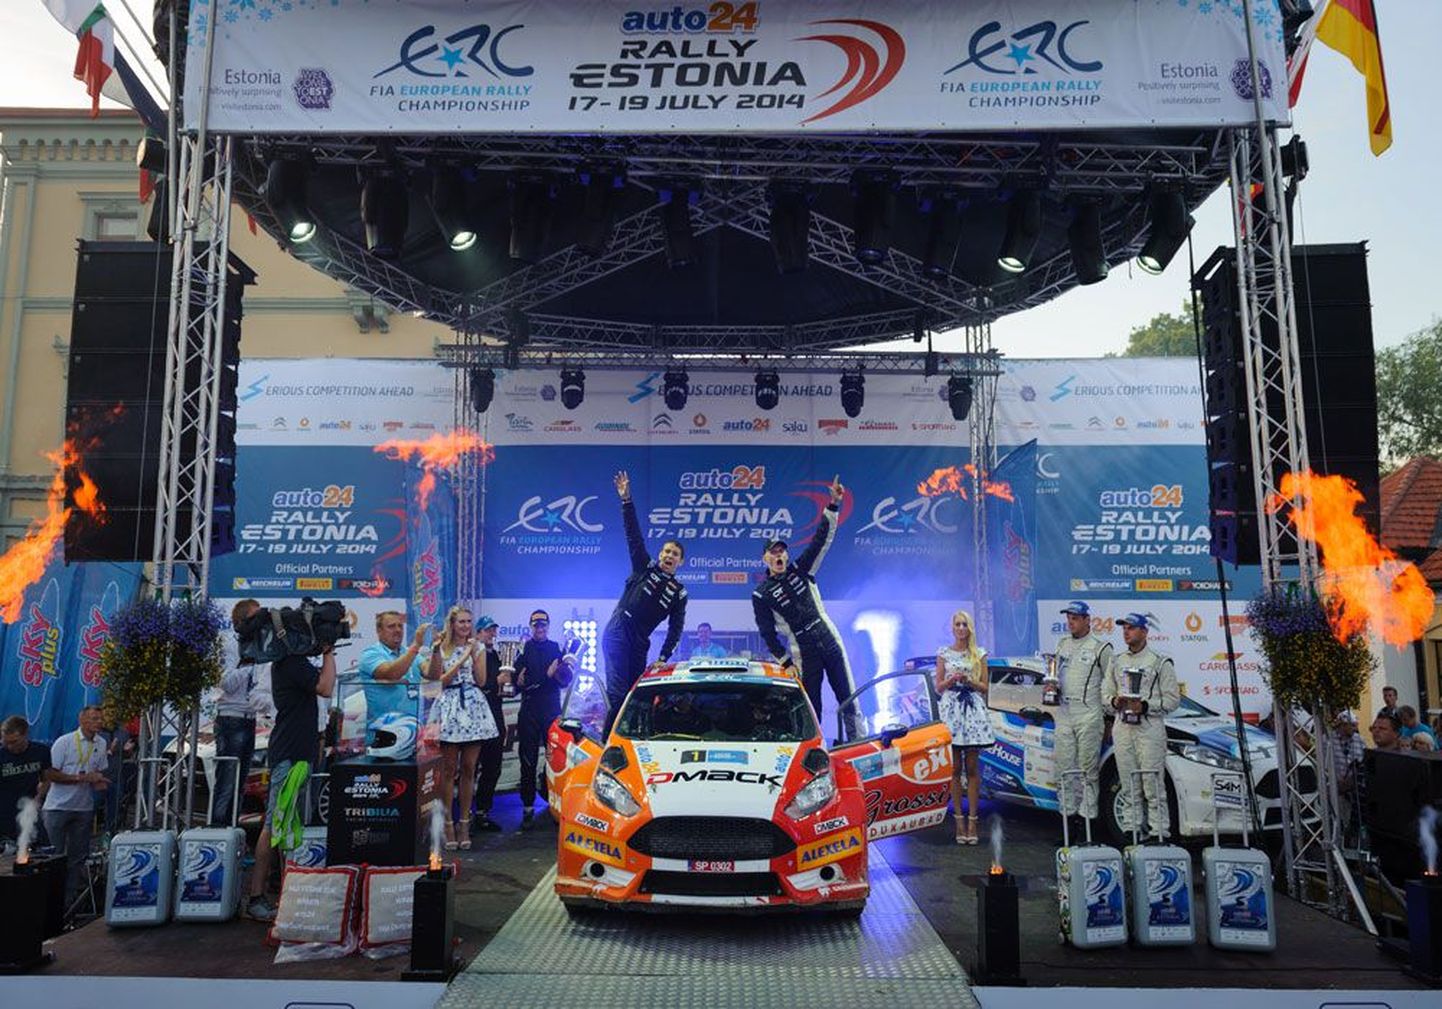 Победители Rally Estonia Отт Тянак и Райго Мыльдер, подарившие тысячам поклонников ралли массу положительных эмоций, чувствовали себя настоящими суперзвездами этого зрелищного вида спорта.